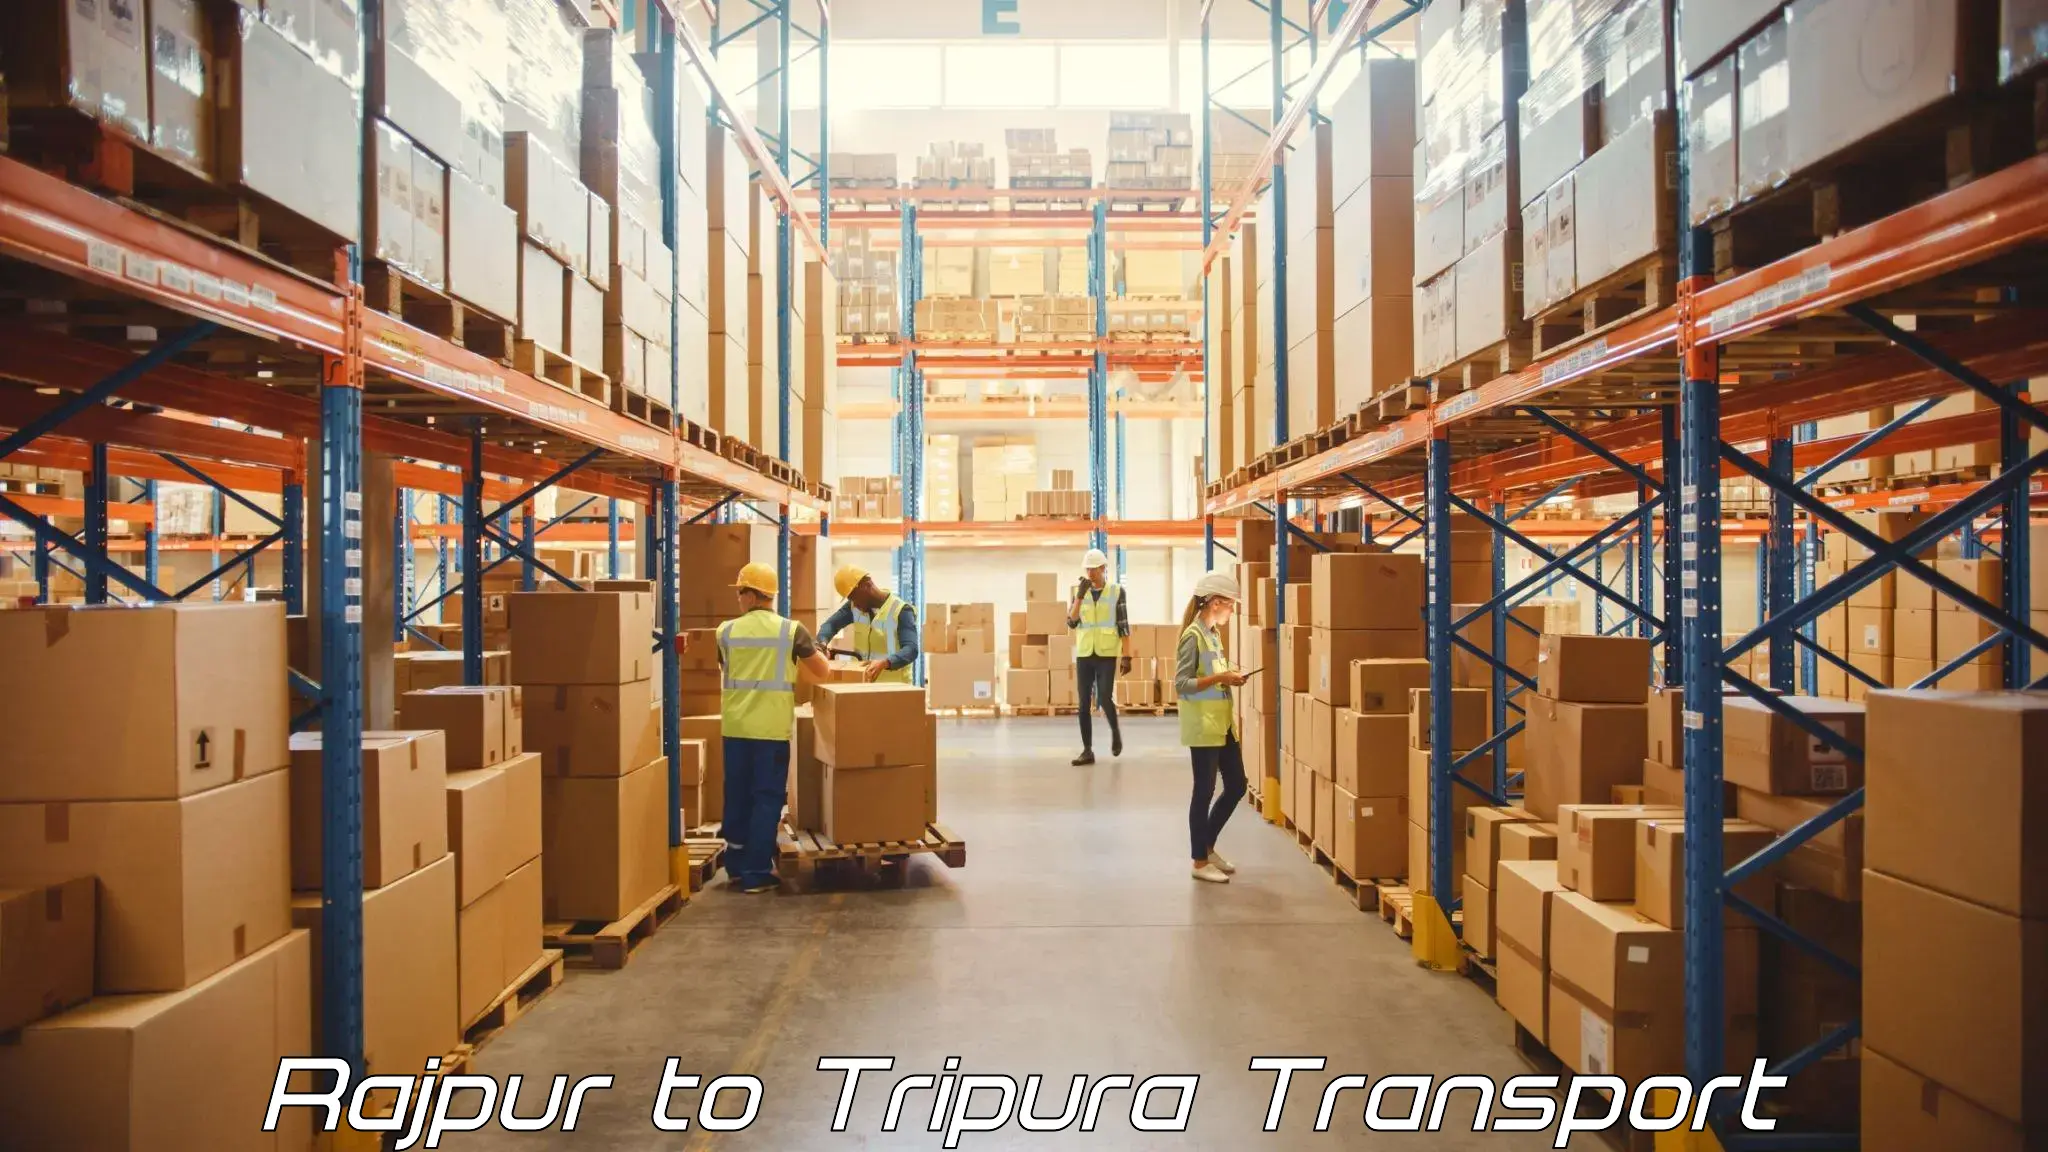 Furniture transport service Rajpur to IIIT Agartala